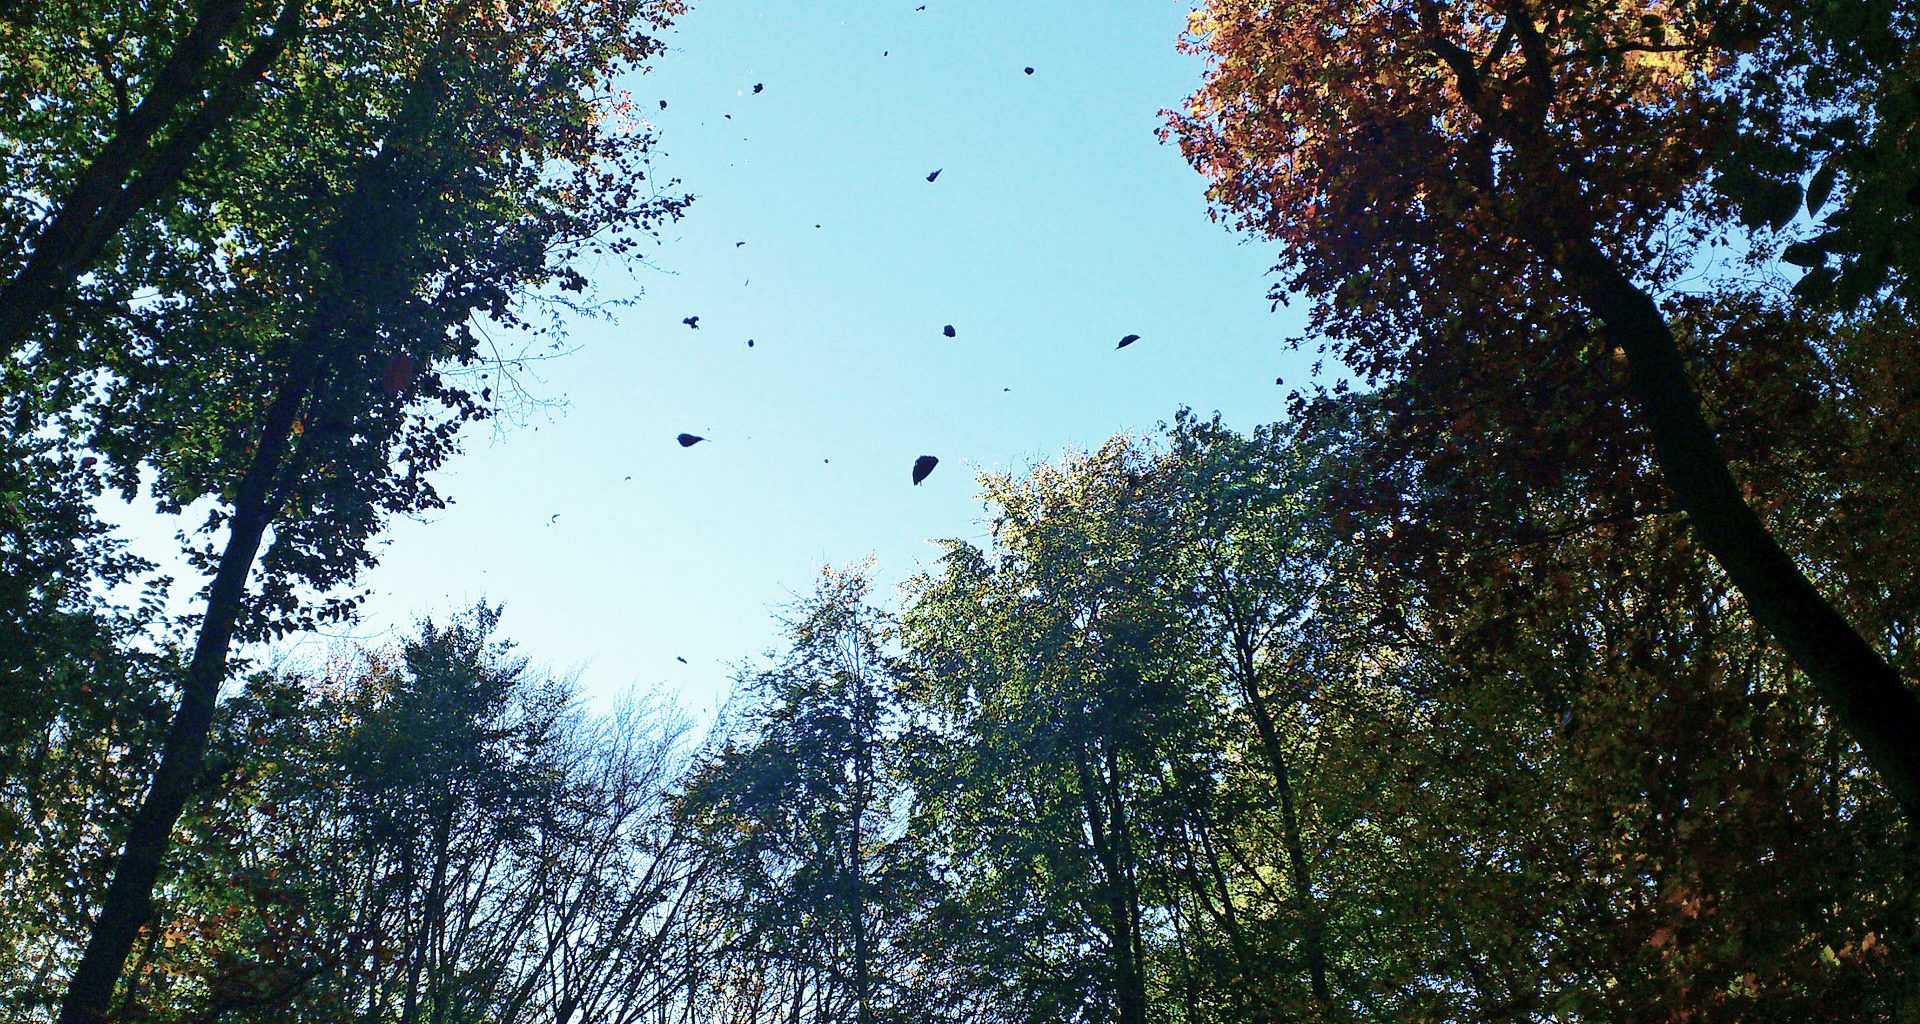 Baumkronen aus der Sicht eines Spaziergängers von unten, einige Blätter in der Luft,blauer Himmerl im Hintergrund